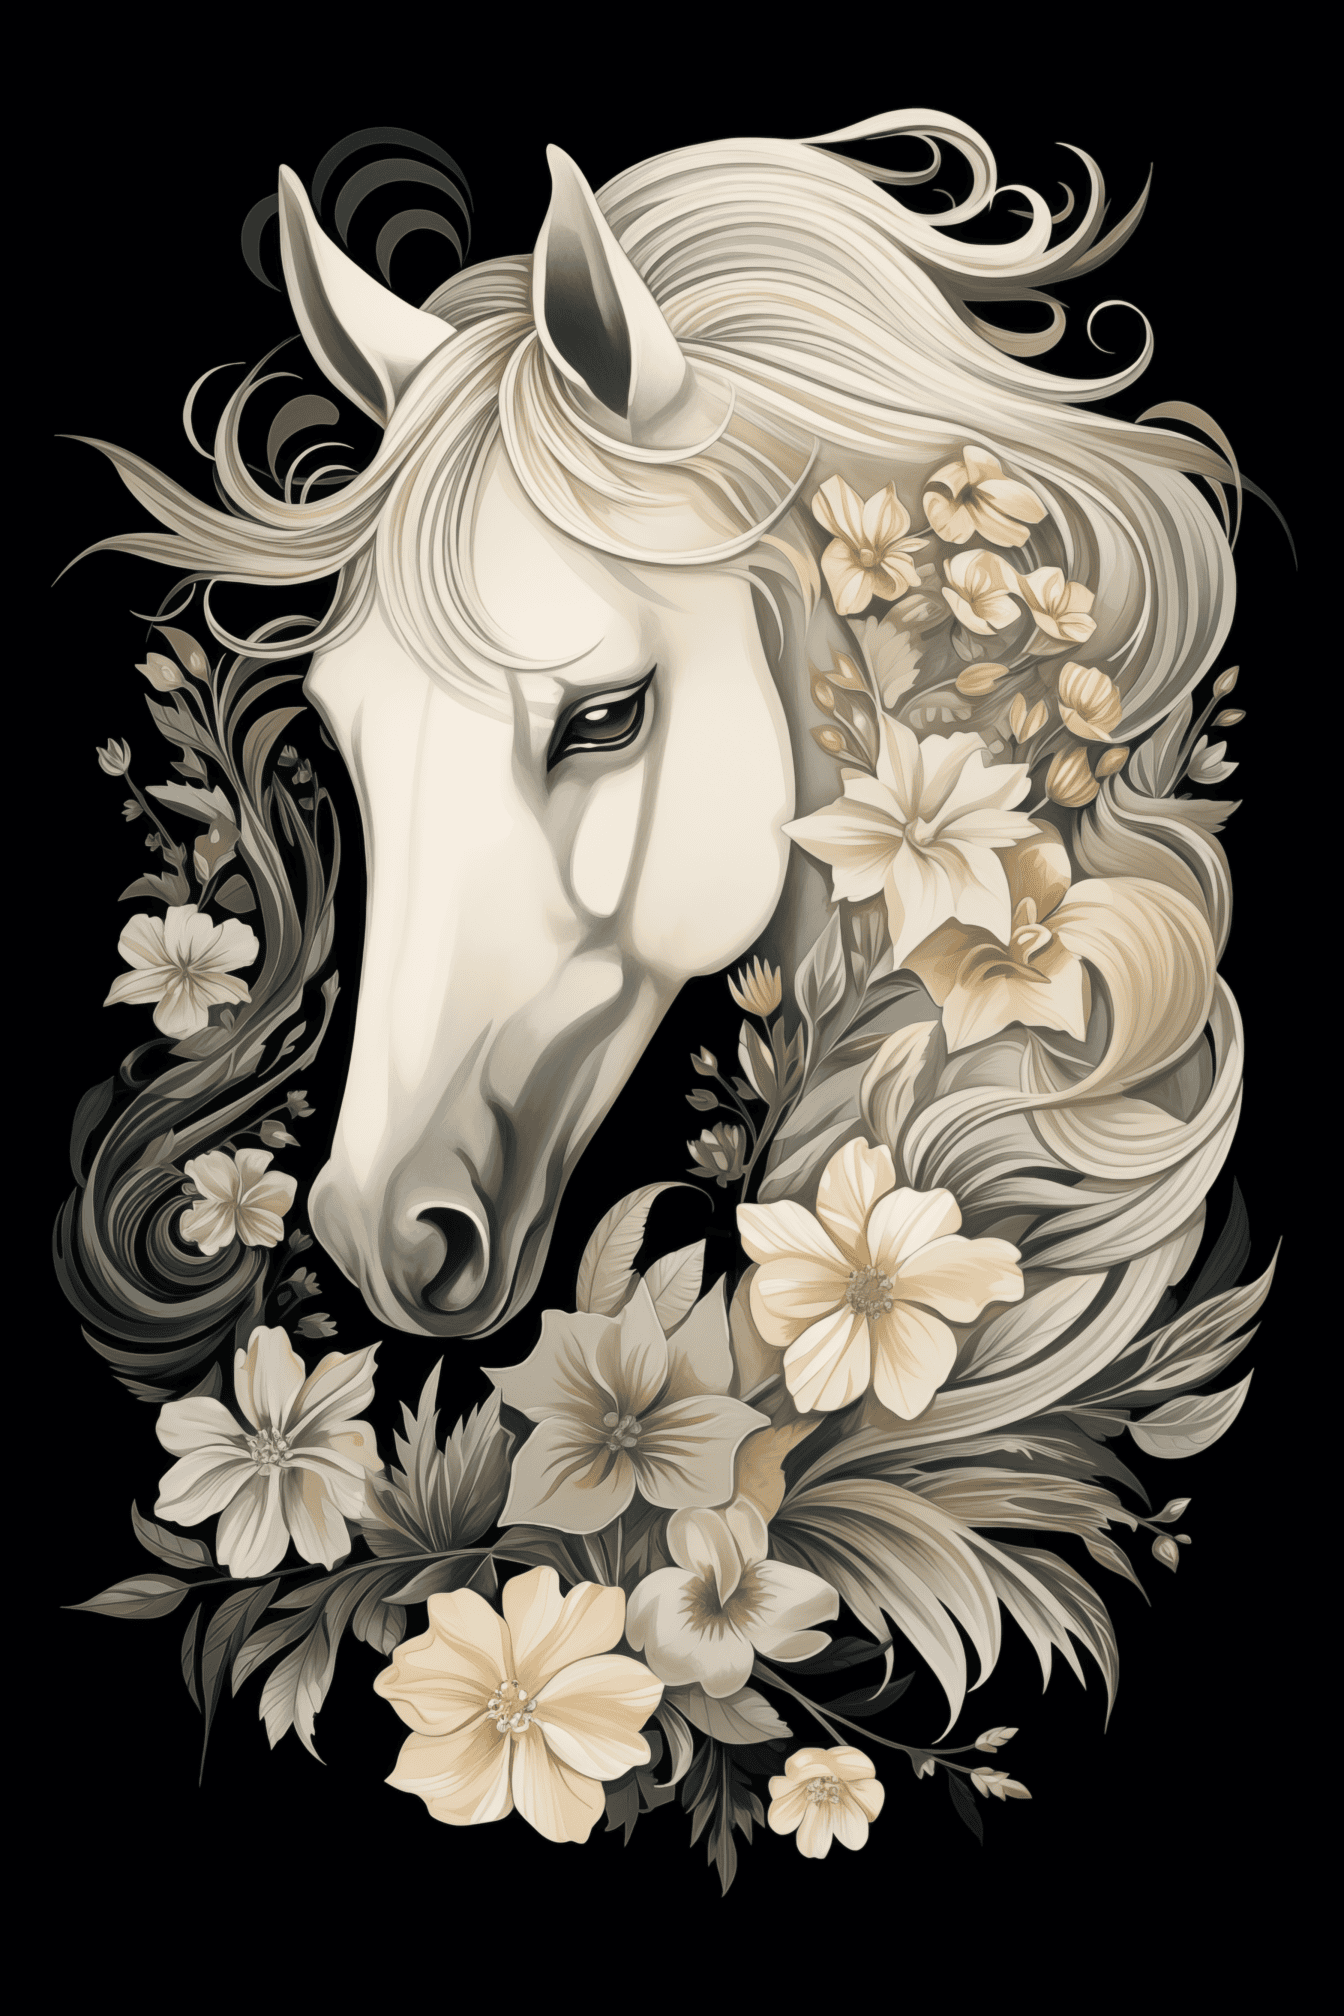 Черно-бяла илюстрация на глава от бял кон с цветни декорации